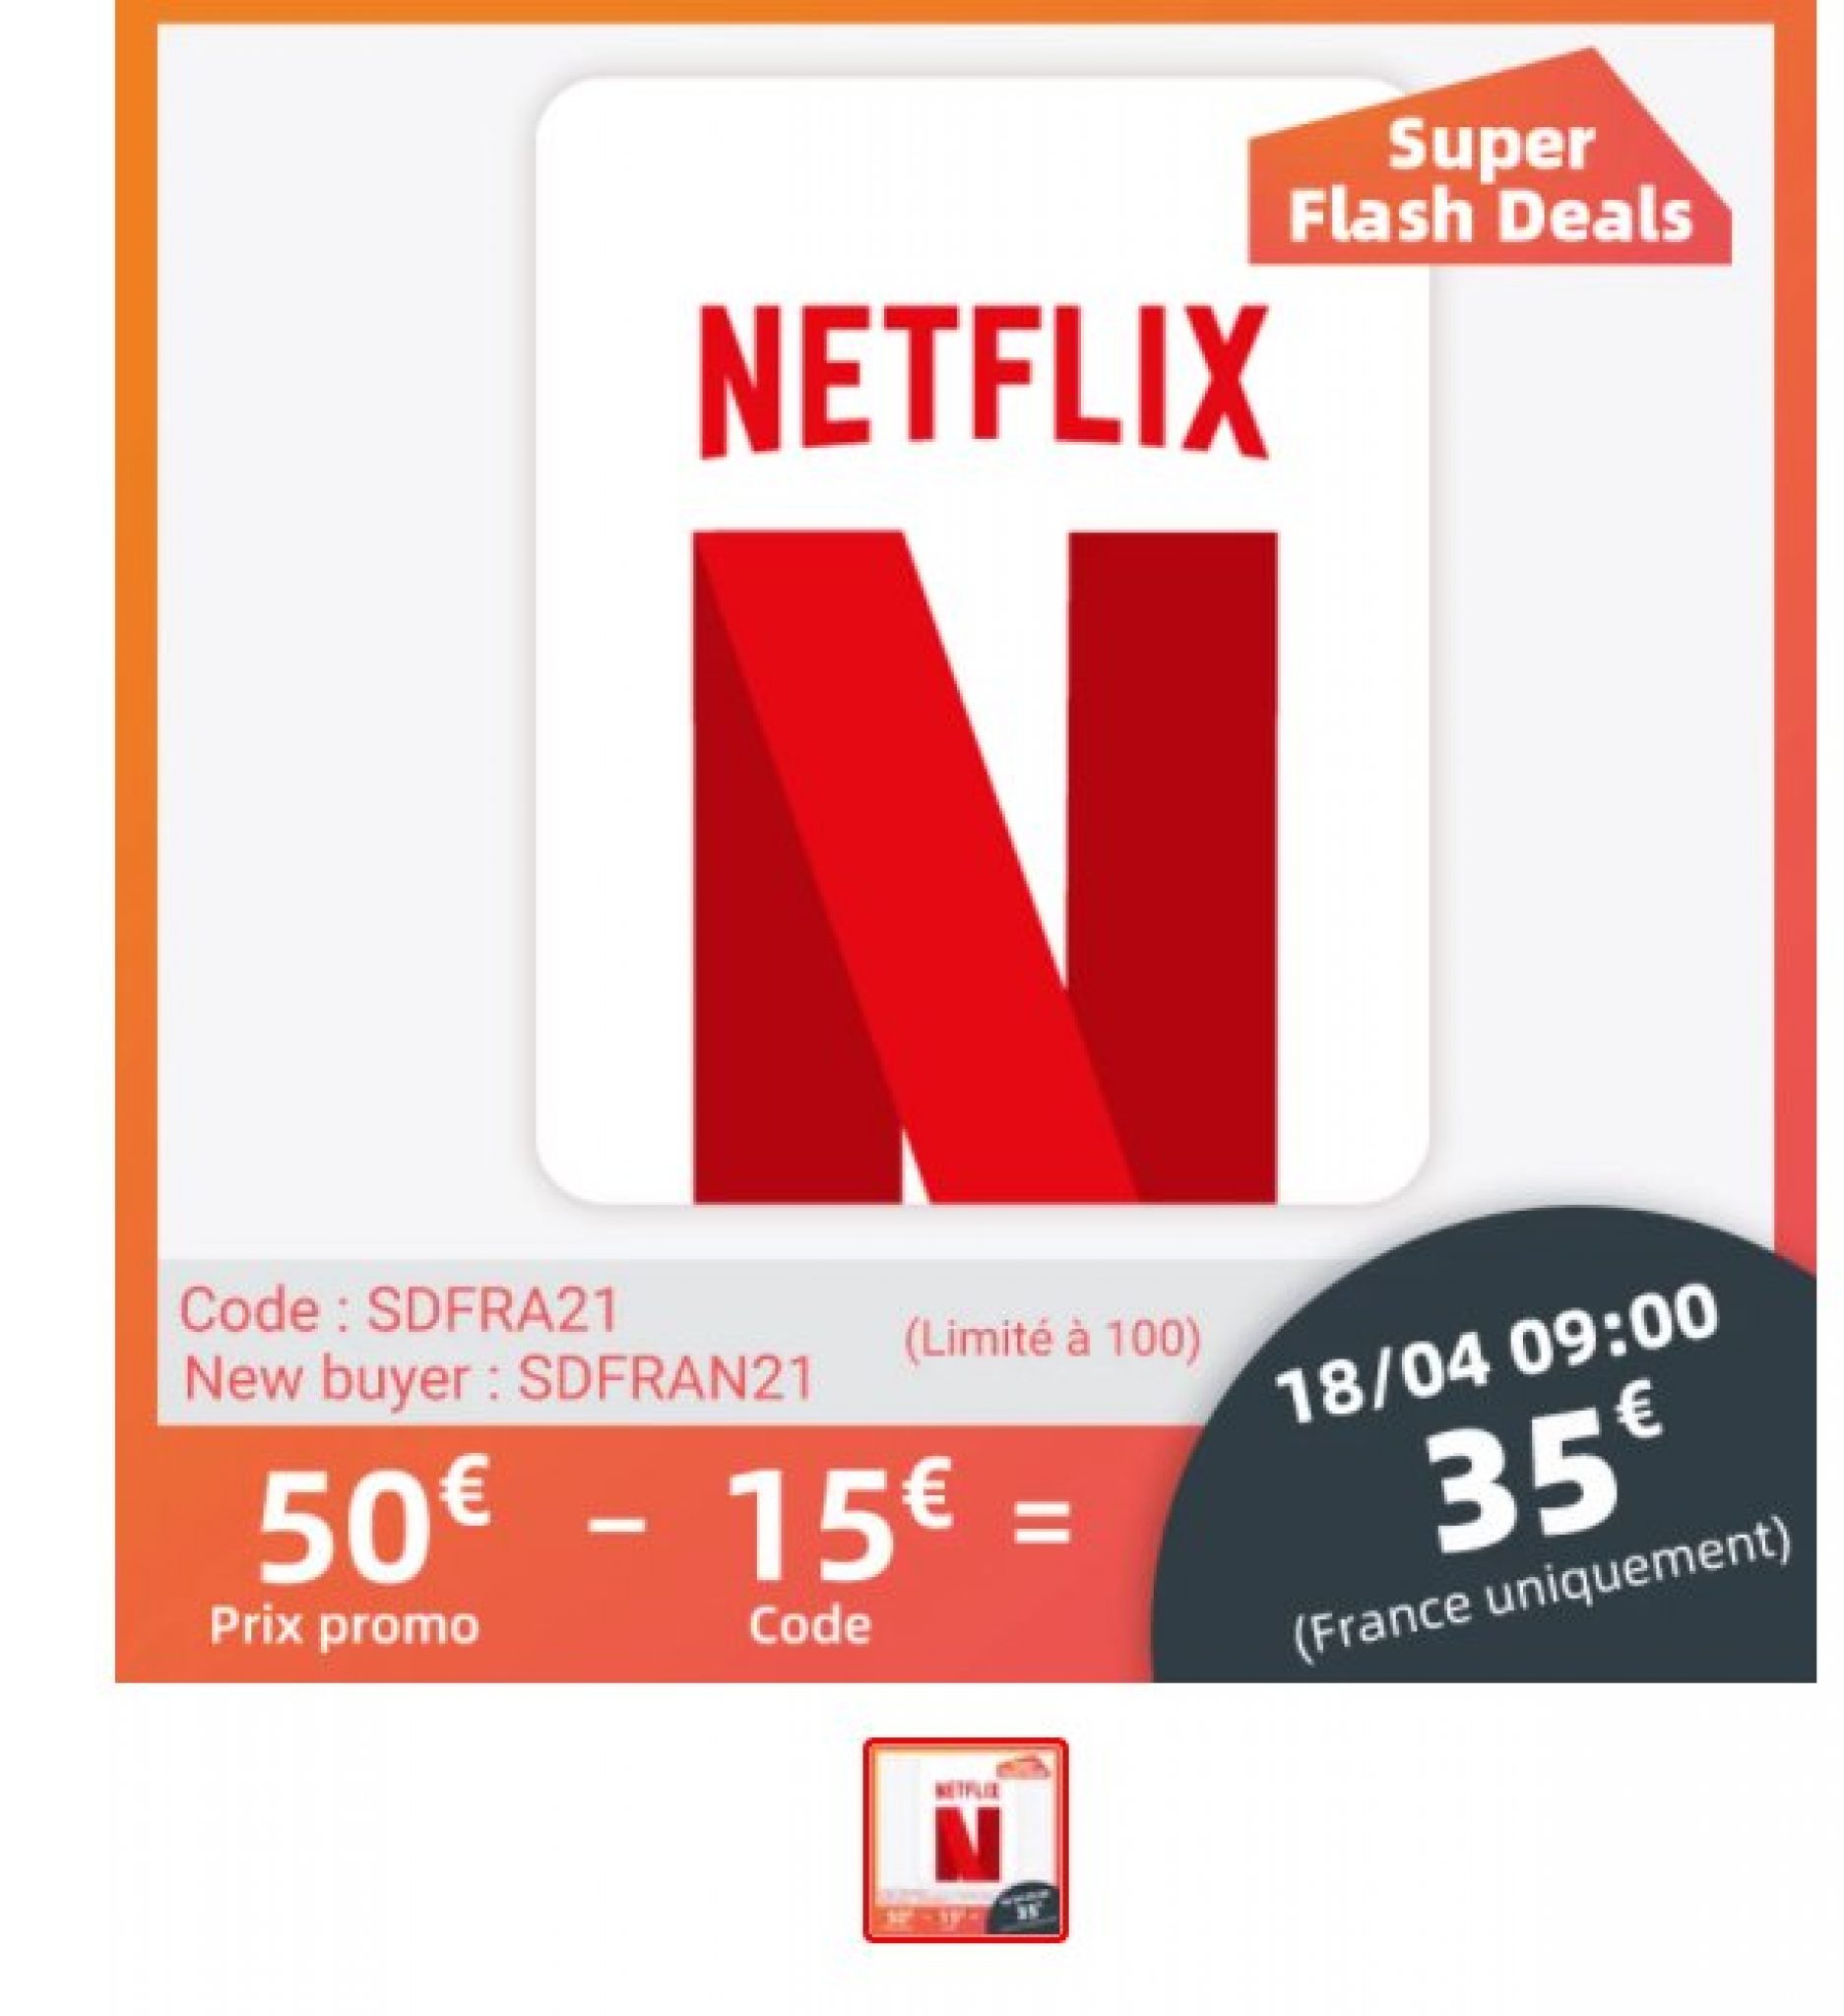 Bon plan abonnement à NETFLIX moins cher 35€ la carte cadeau de 50€